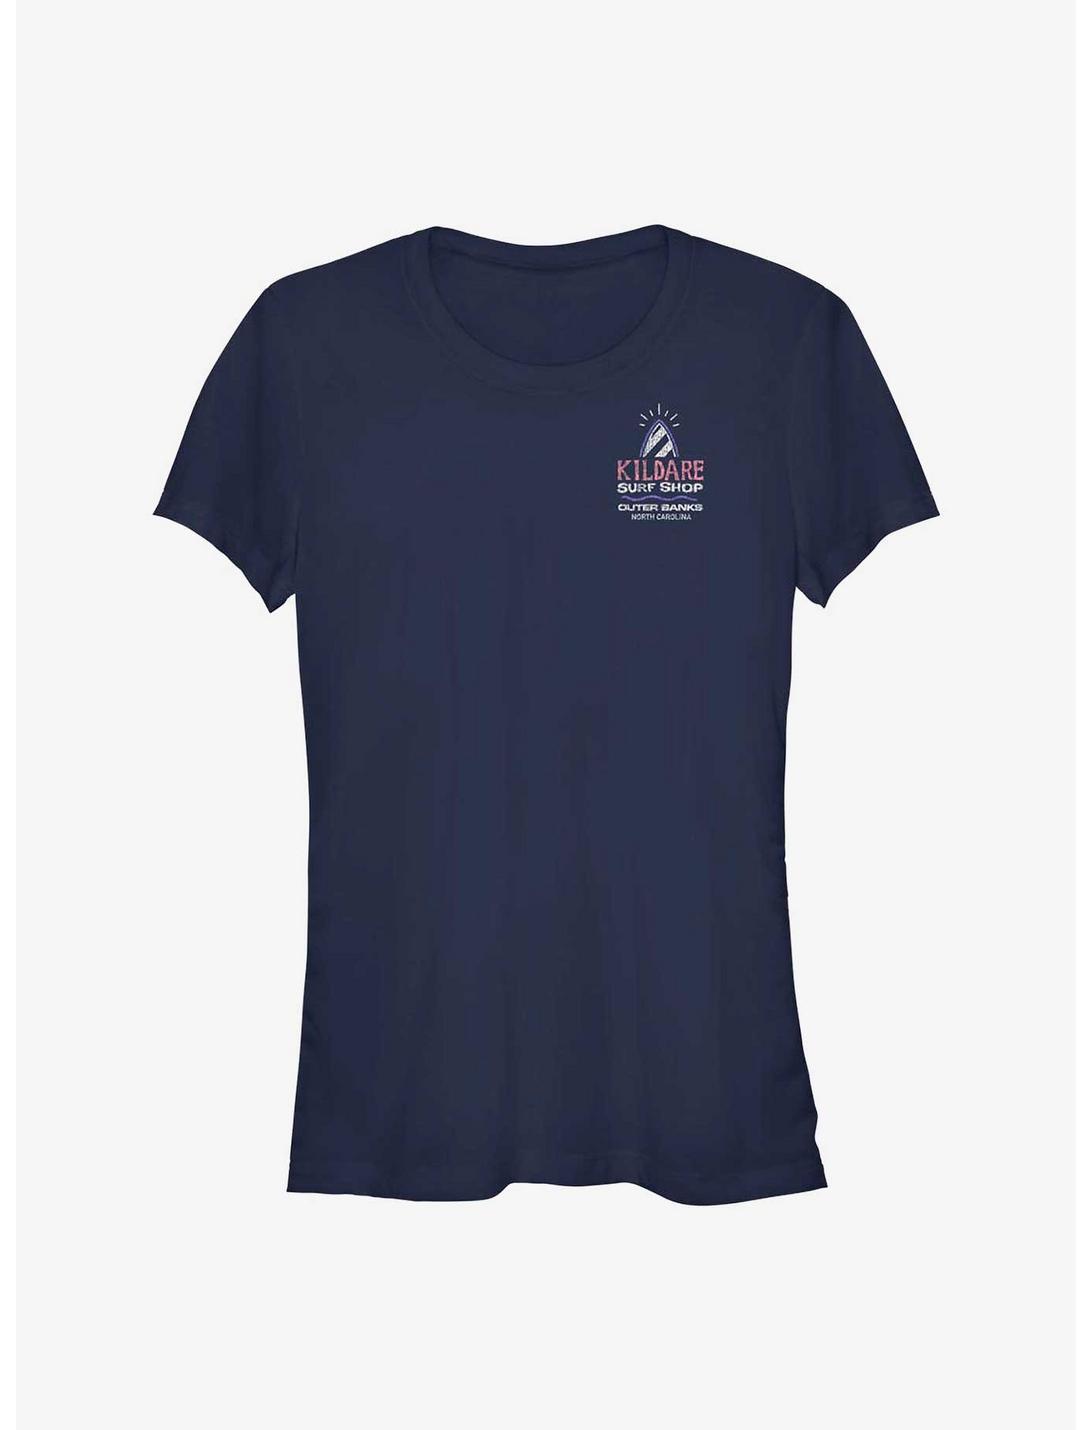 Outer Banks Kildare Surf Shop Logo Girls T-Shirt, NAVY, hi-res